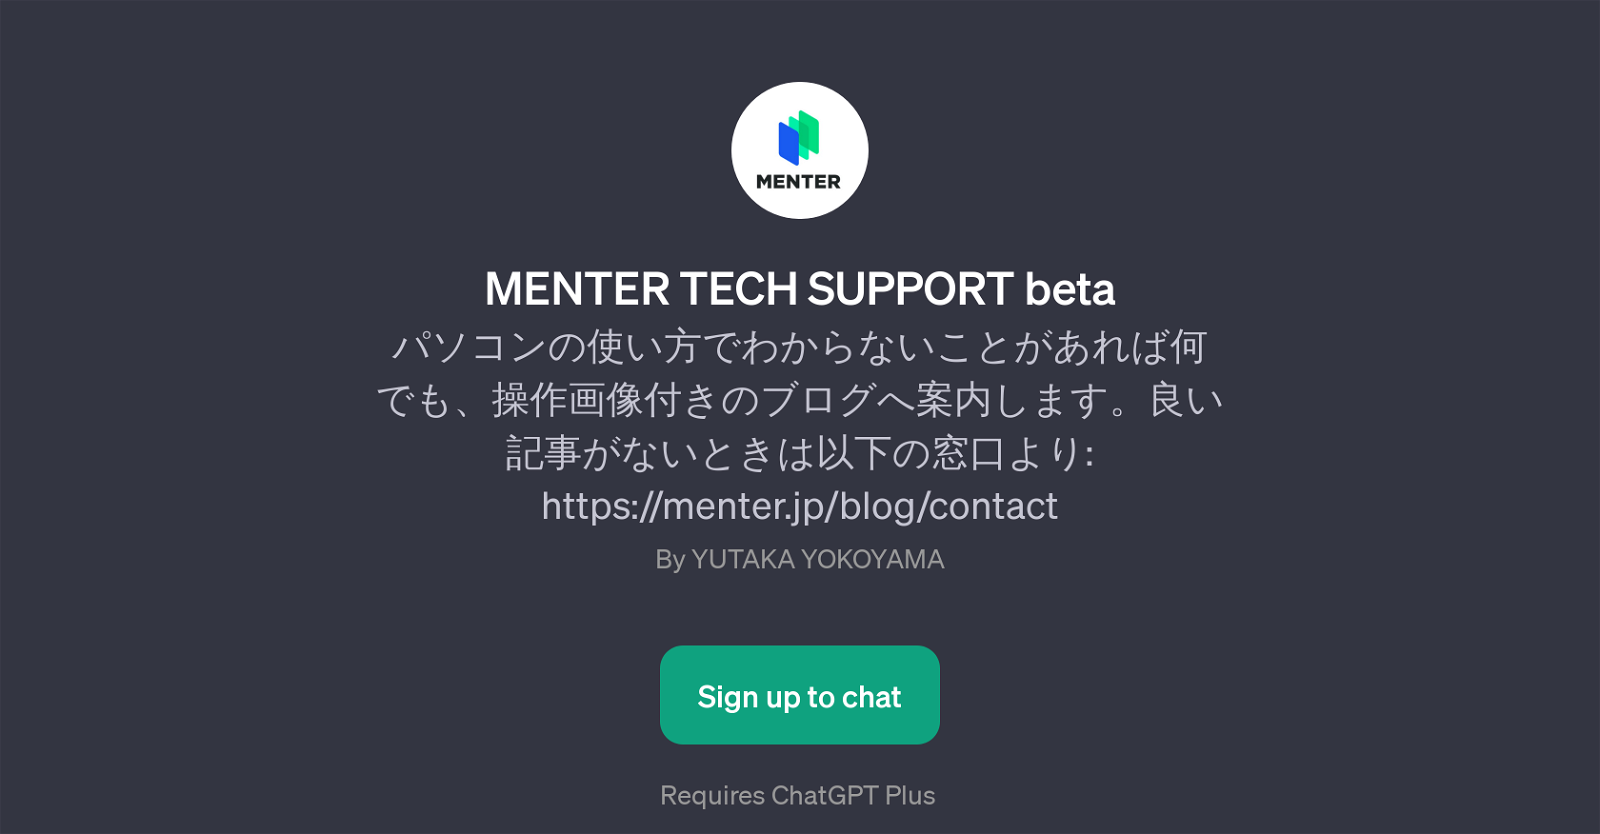 MENTER TECH SUPPORT beta website